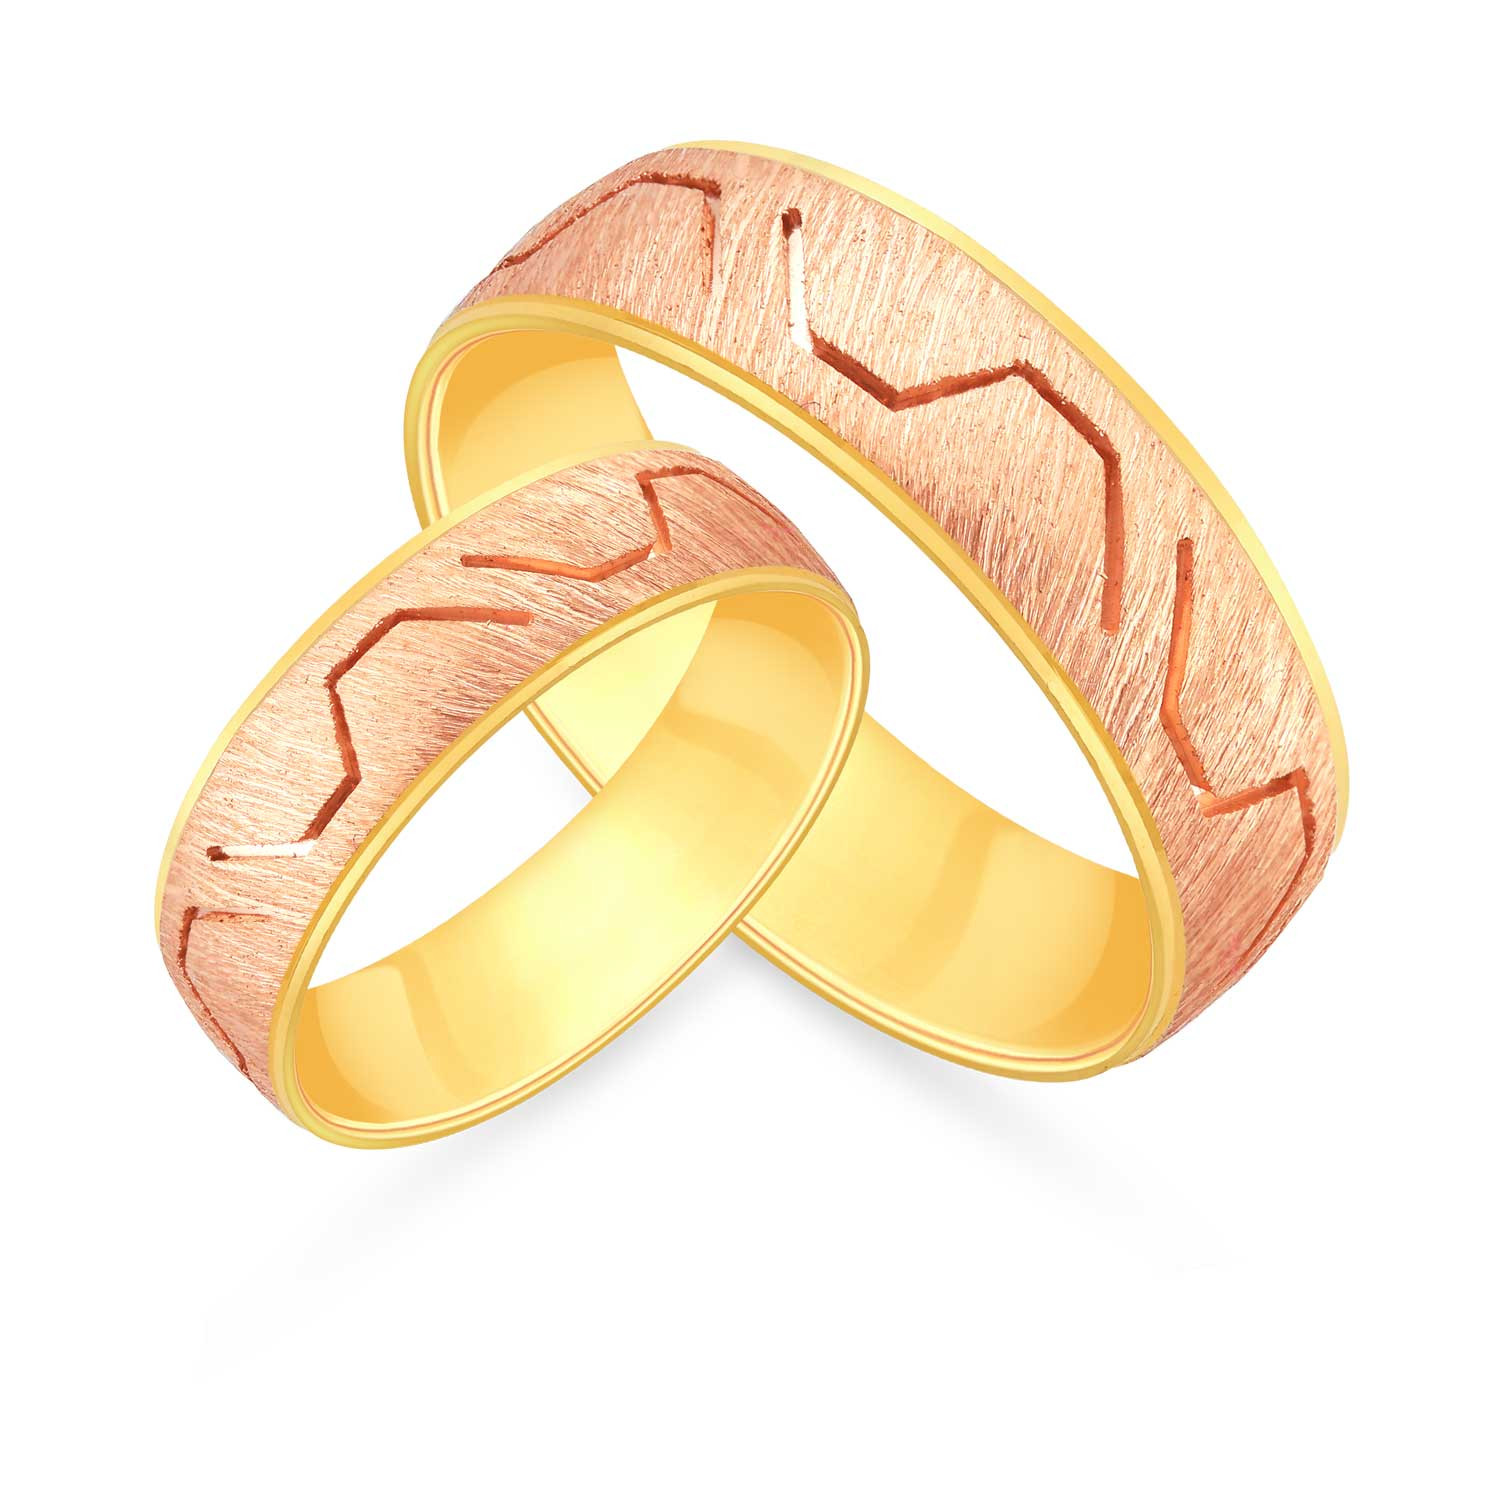 Malabar Gold & Diamonds 22KT Yellow Gold Hand Chain for Women : Amazon.in:  Fashion